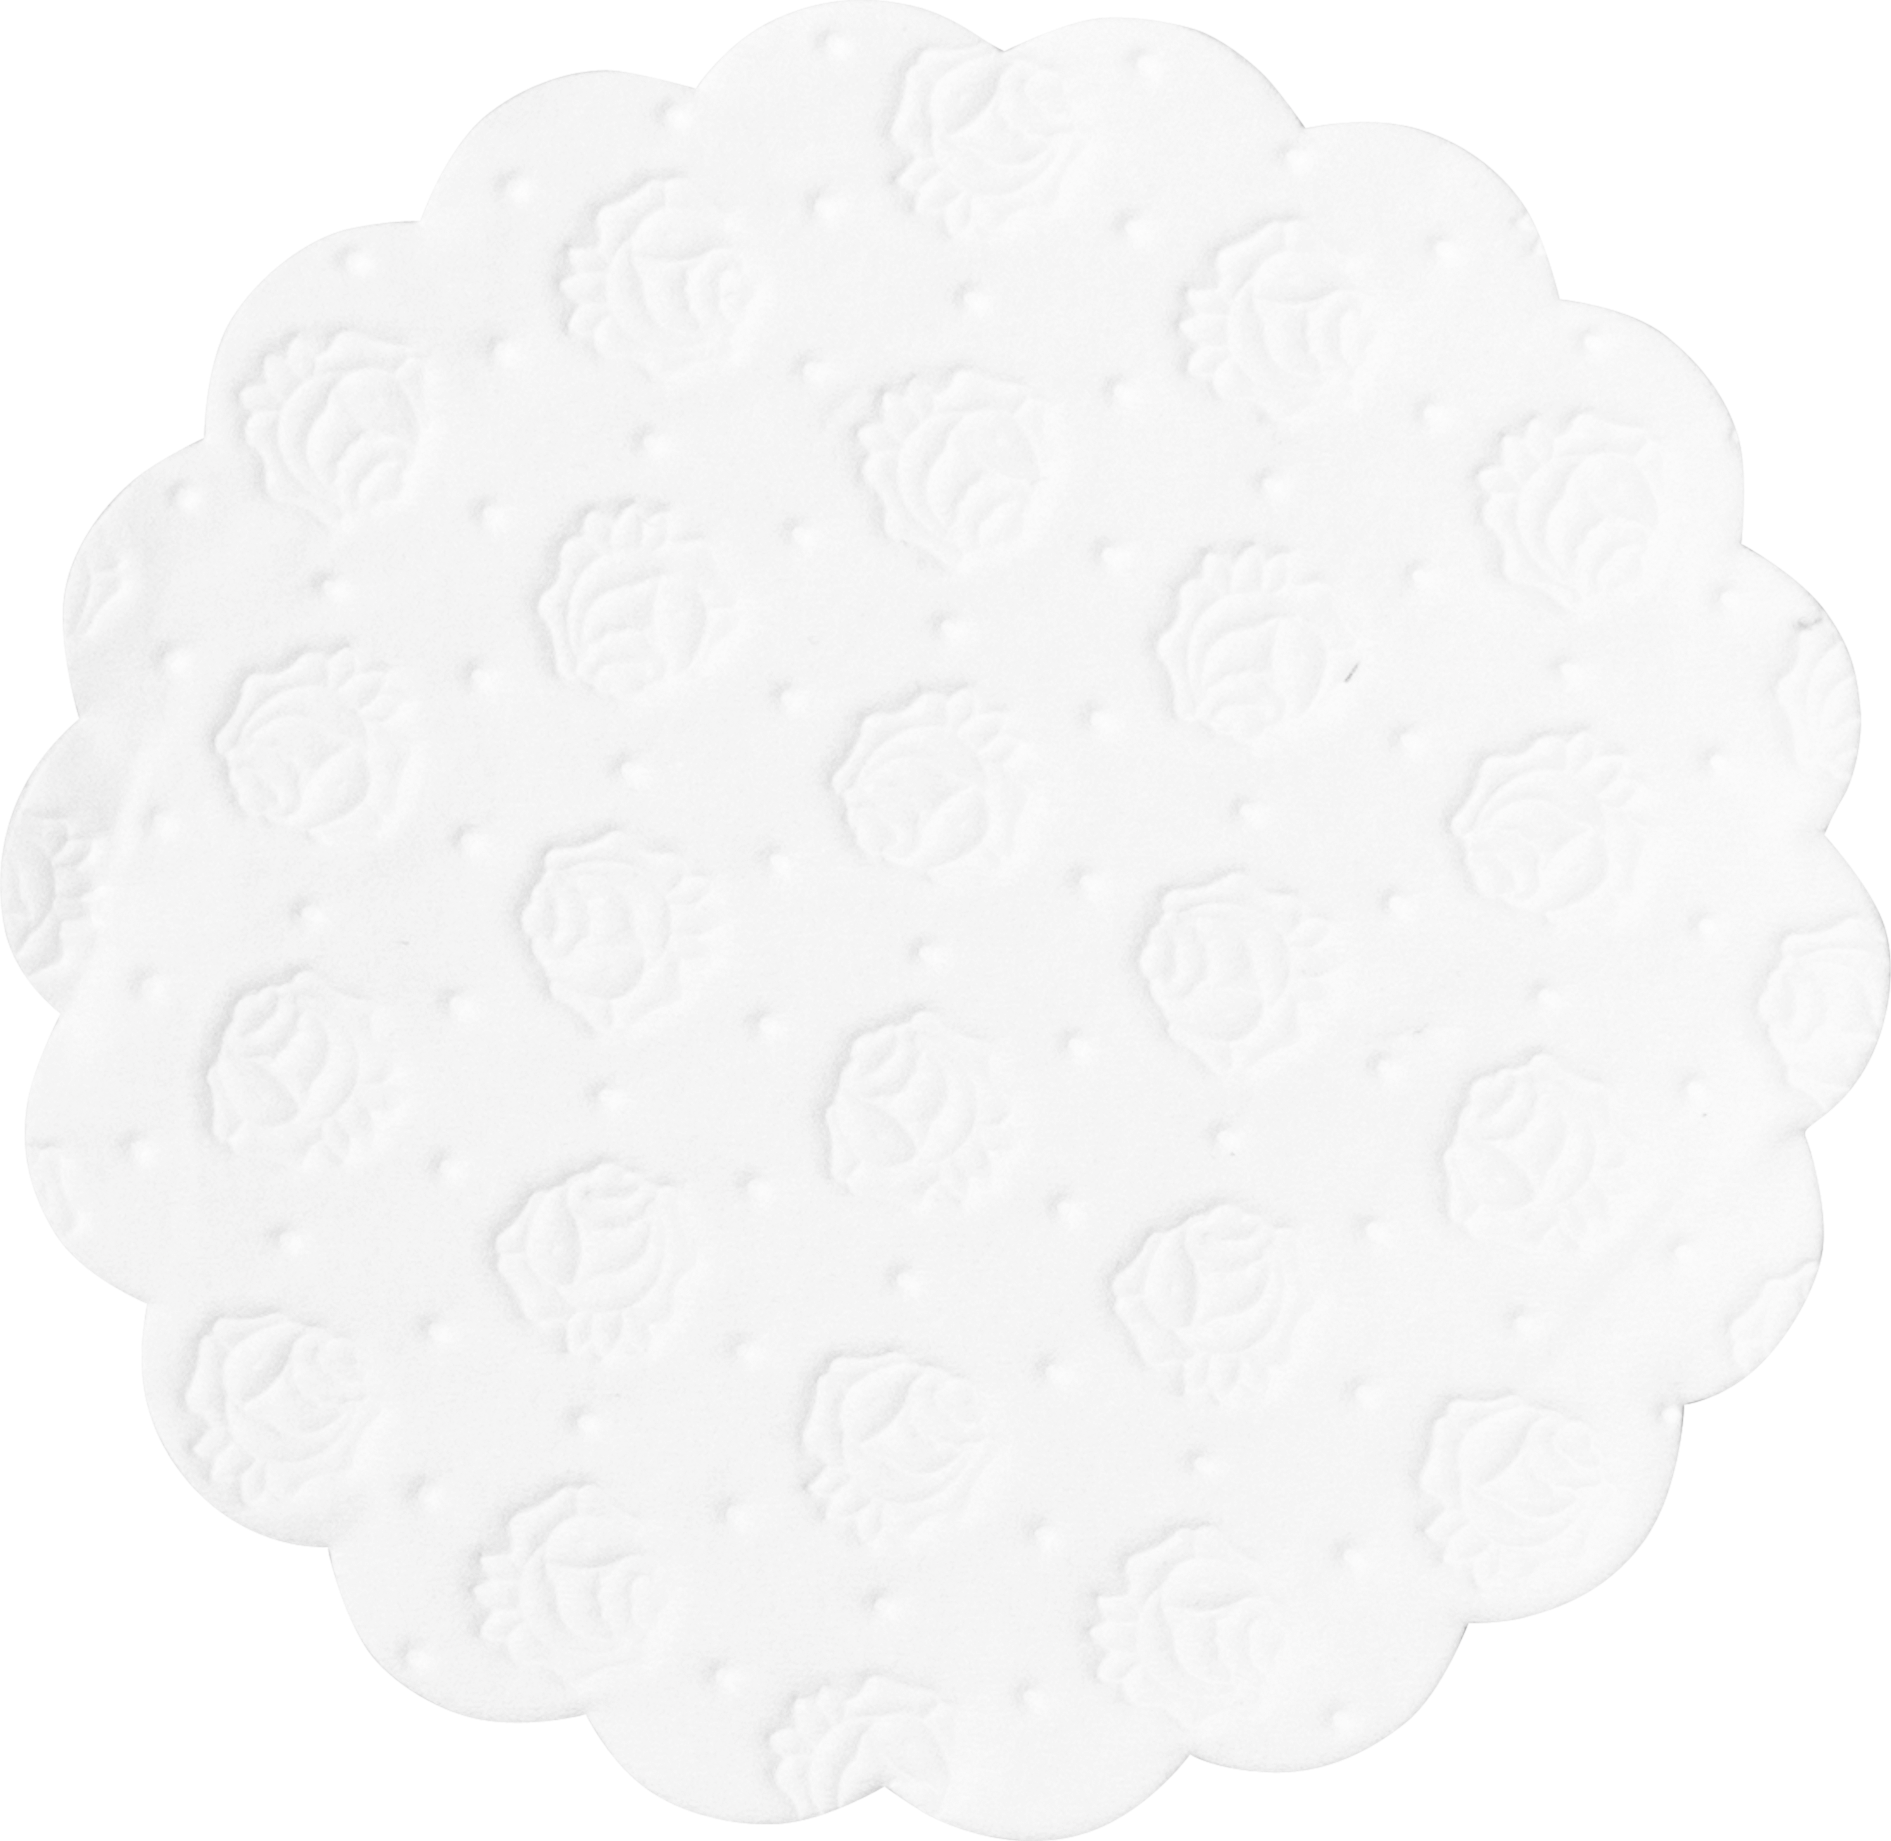 Tissue-Tassendeckchen weiß, ø 9 cm